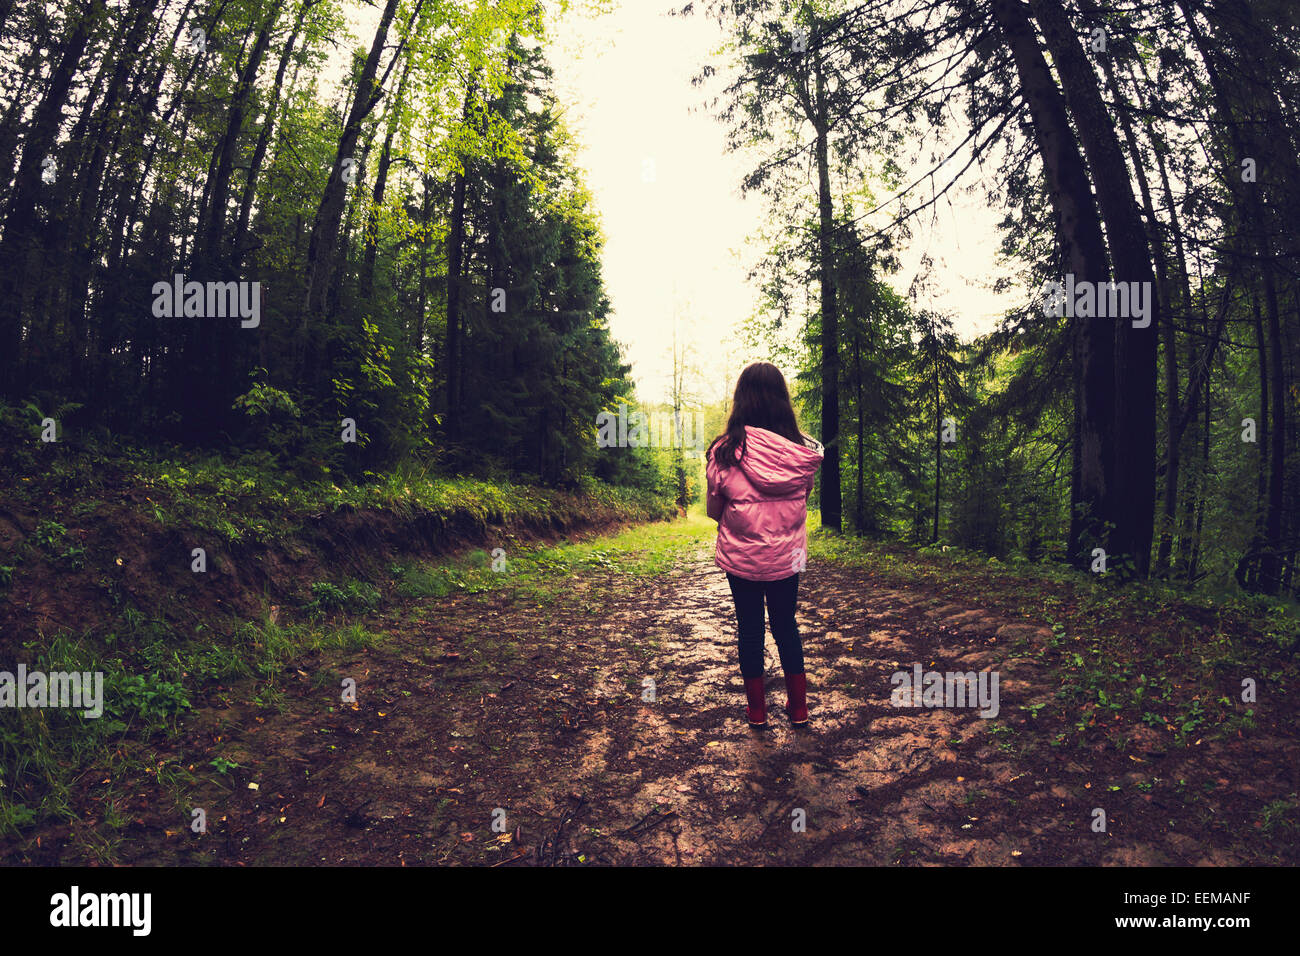 Caucasian girl marche sur chemin de terre en forêt Banque D'Images